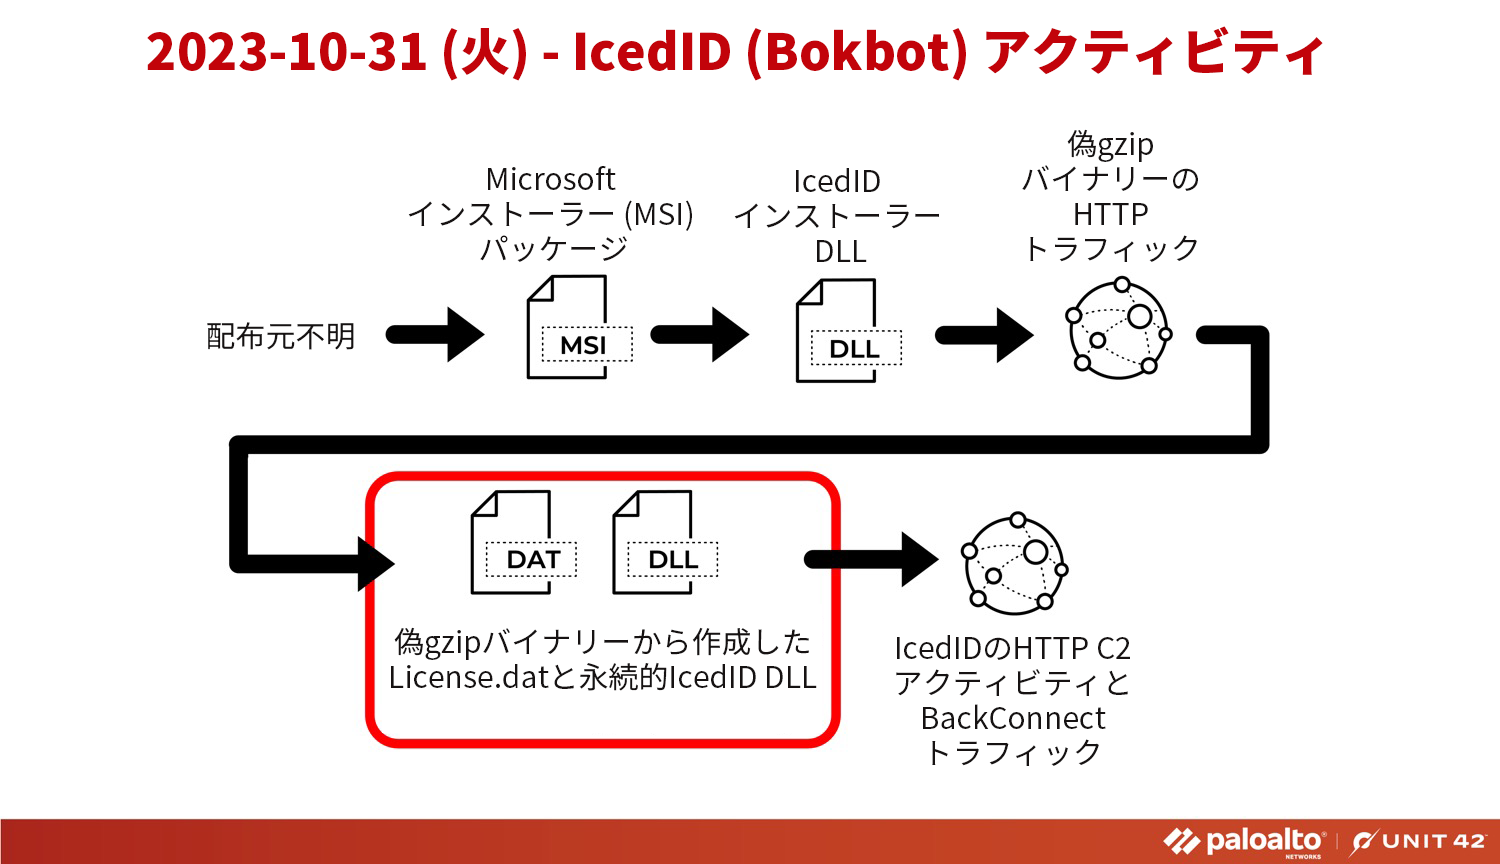 IcedID (BokBot) のアクティビティ。不明なソース > Microsoft インストーラー (MSI) パッケージ > IcedID インストーラー DLL > 偽 gzip バイナリーの HTTP トラフィック > 偽 gzip バイナリーから作成された License.dat と永続的 IcedID DLL > IcedID HTTP C2 アクティビティと BackConnect トラフィック。 